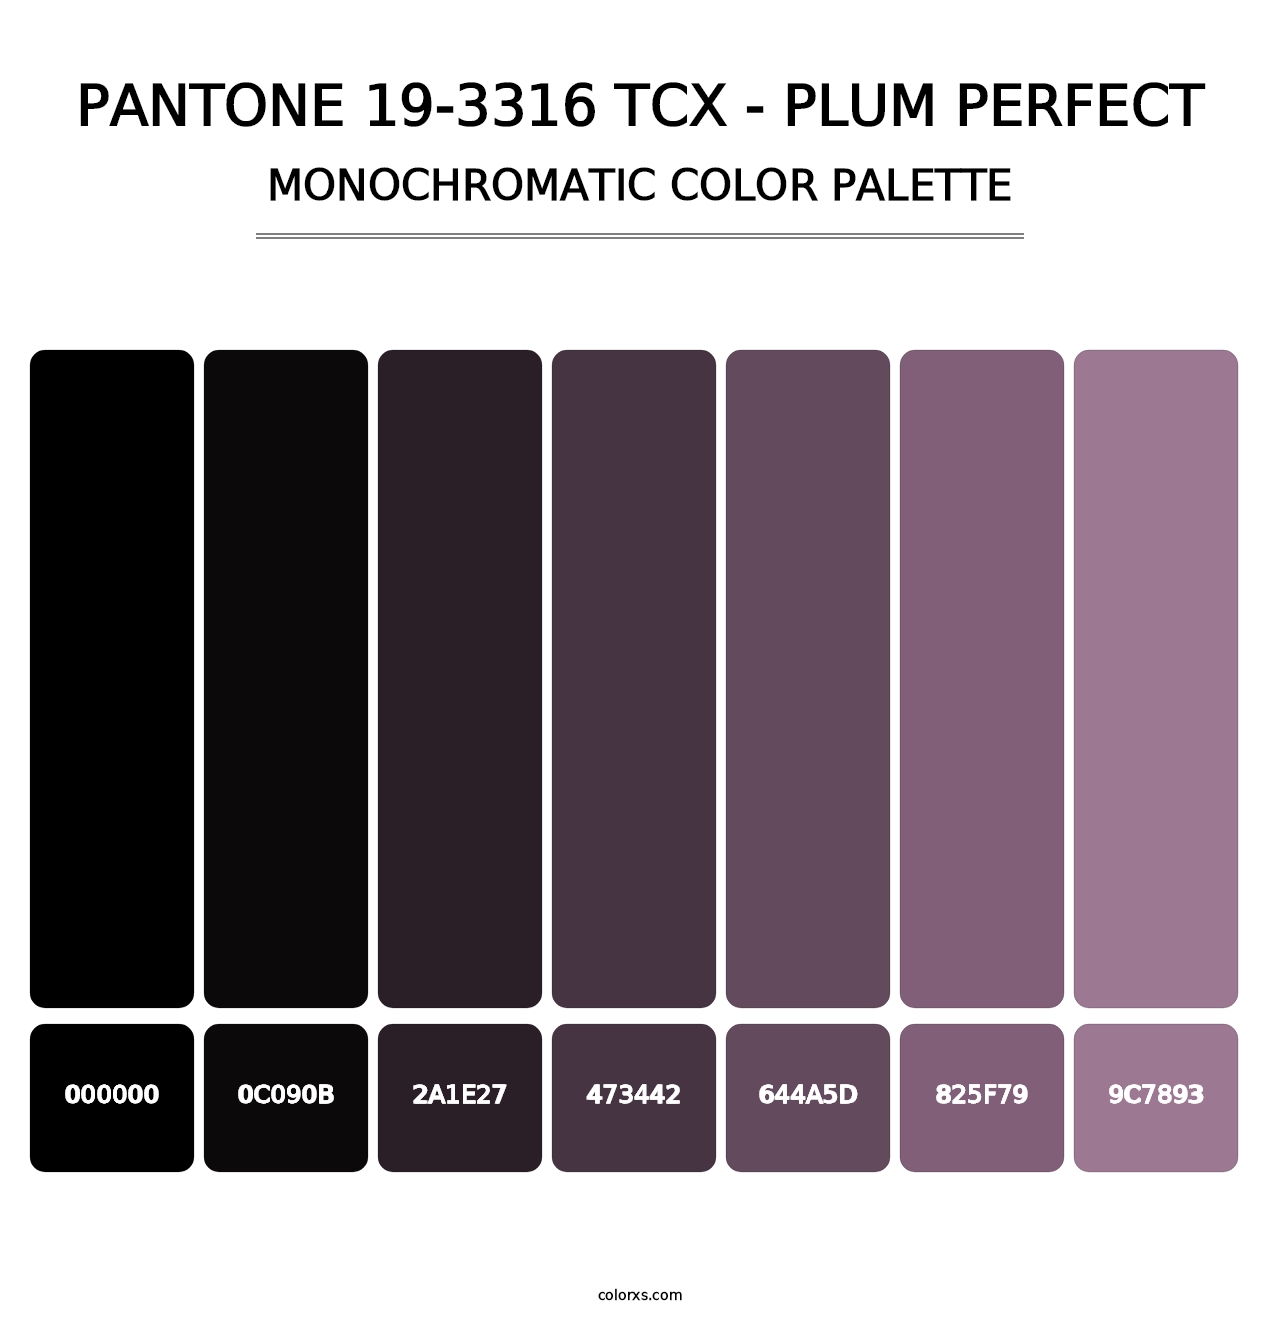 PANTONE 19-3316 TCX - Plum Perfect - Monochromatic Color Palette